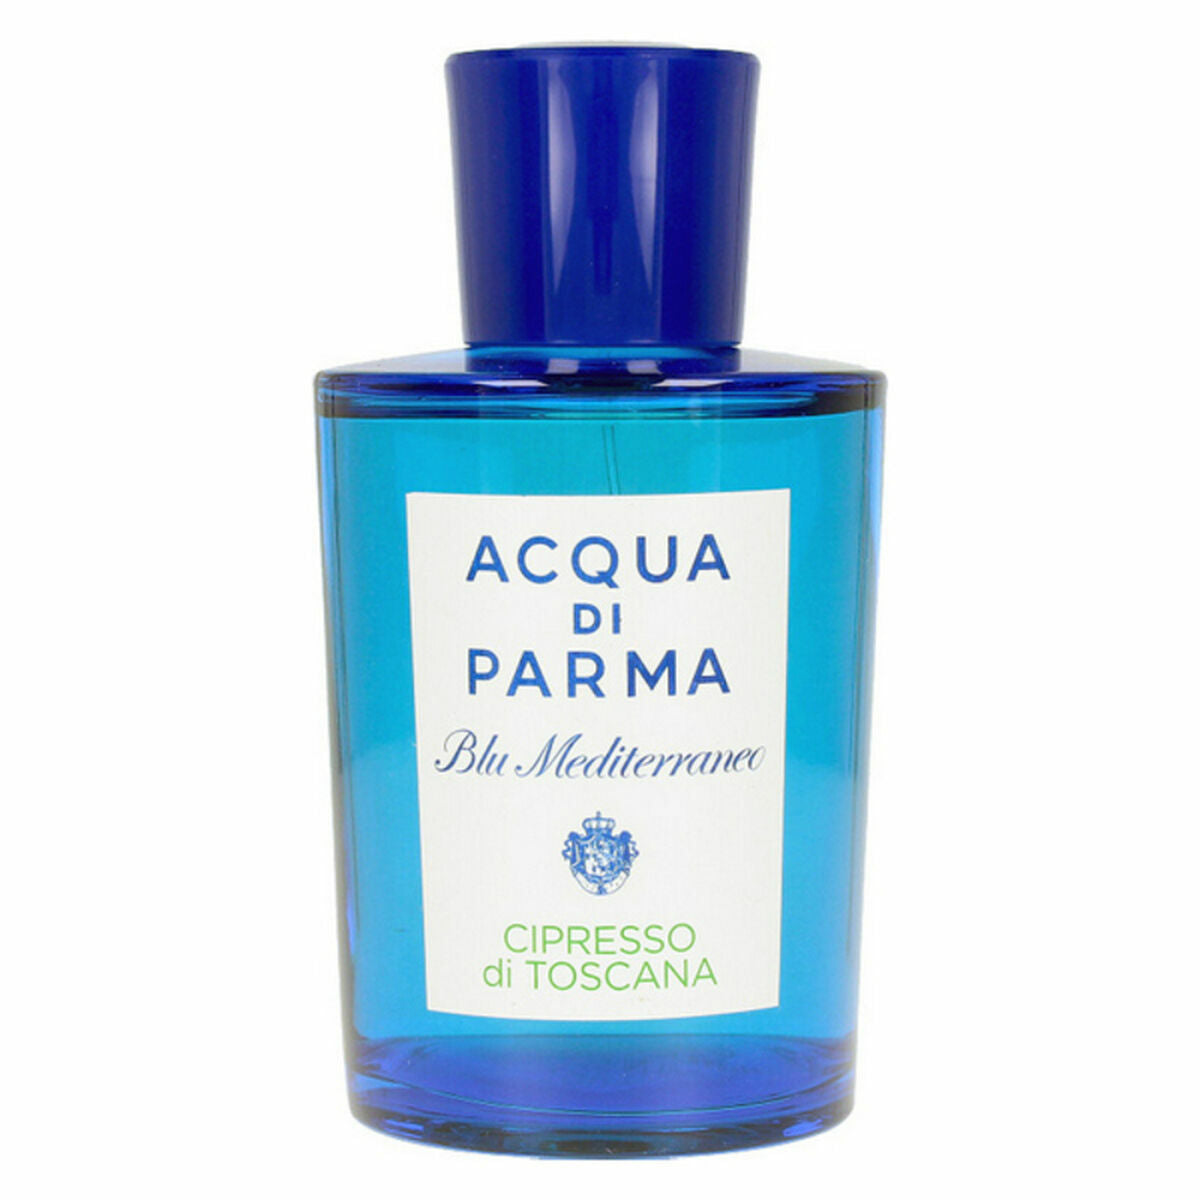 Perfume Unisex Acqua Di Parma Blu Mediterraneo Cipresso Di Toscana EDT 150 ml (1 unidad)